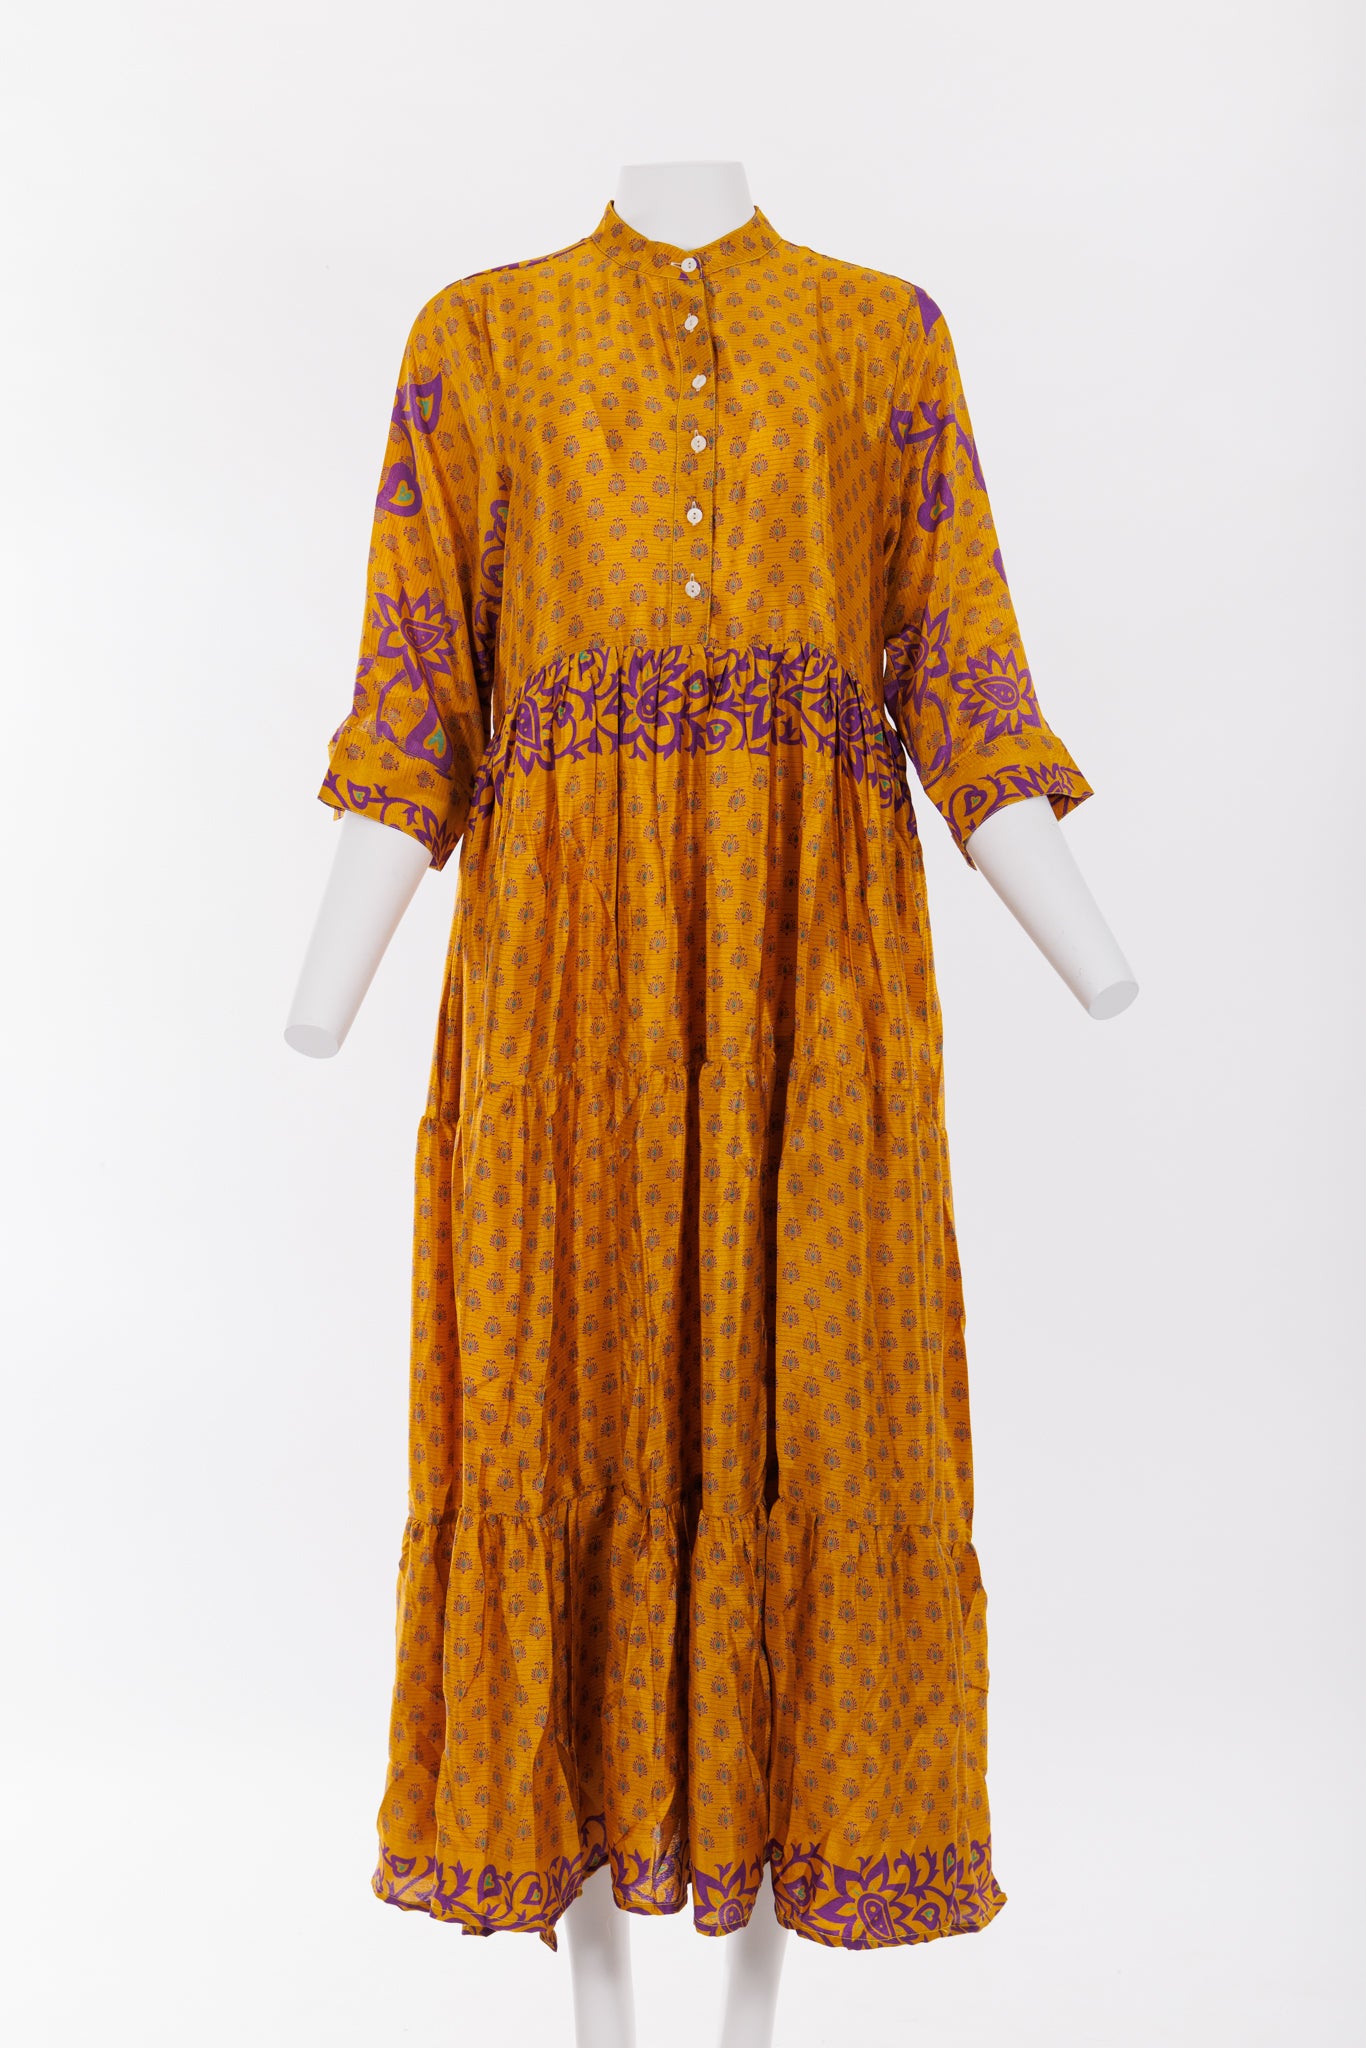 Prairie Round Neck Silk Dress Purple/Golden Yellow Print 046